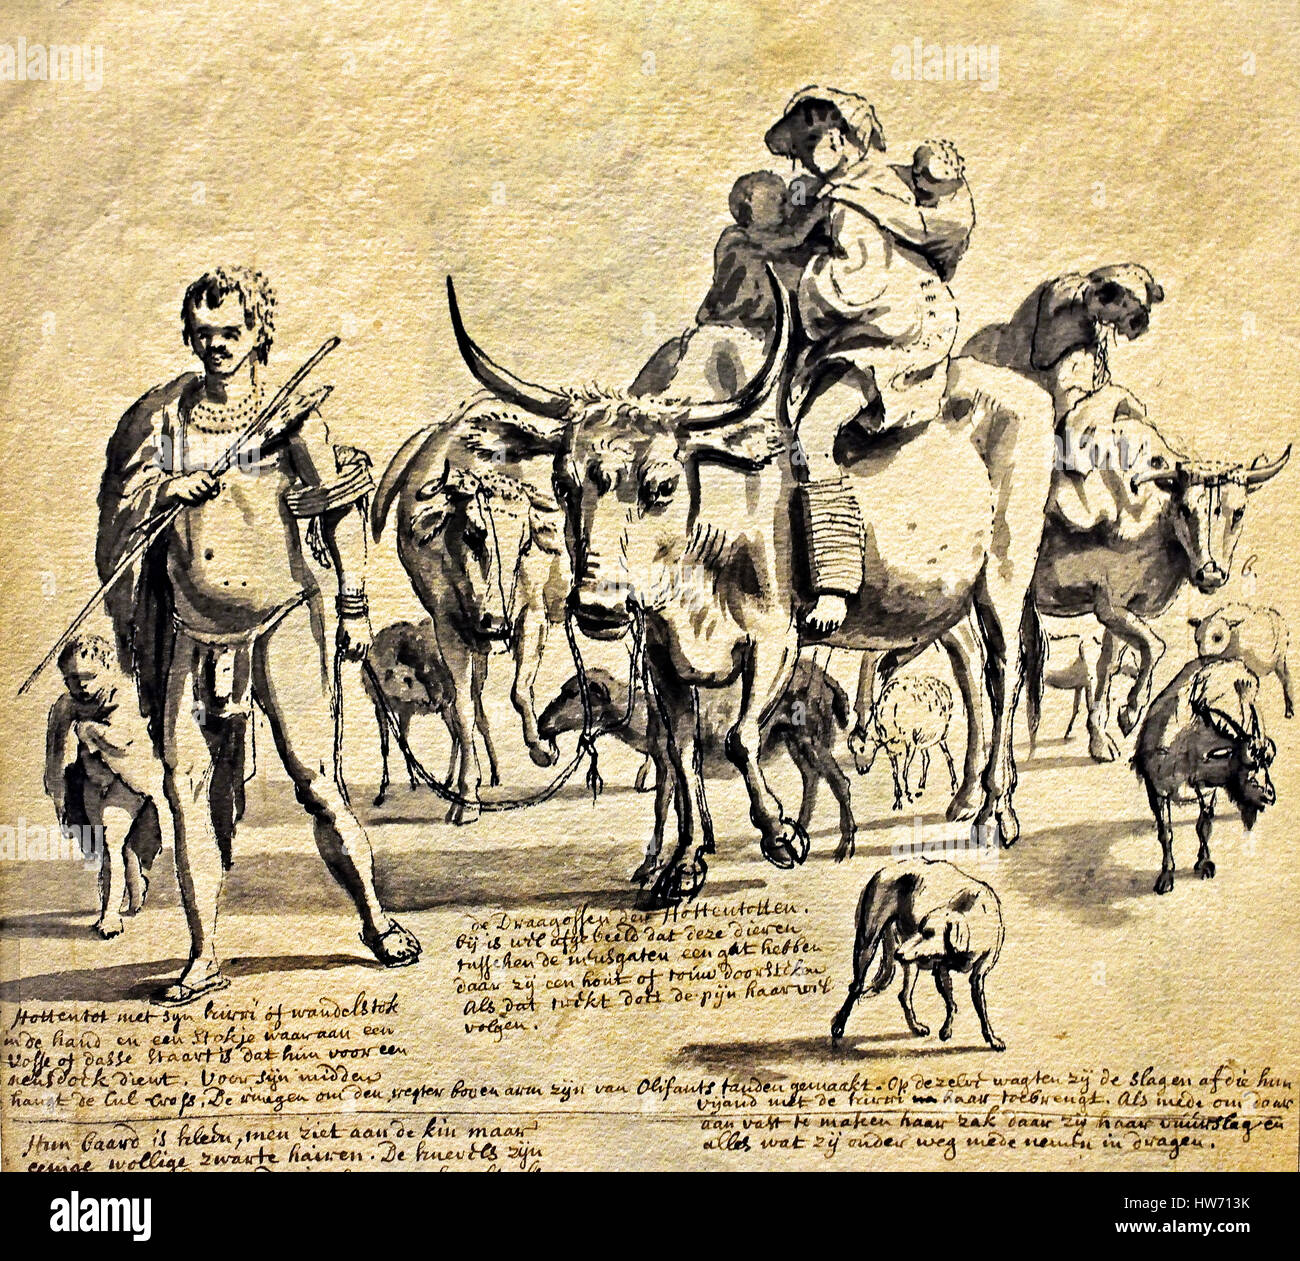 Khoekoe Menschen mit Tieren 1700. Südafrika - Transvaal - African Stockfoto